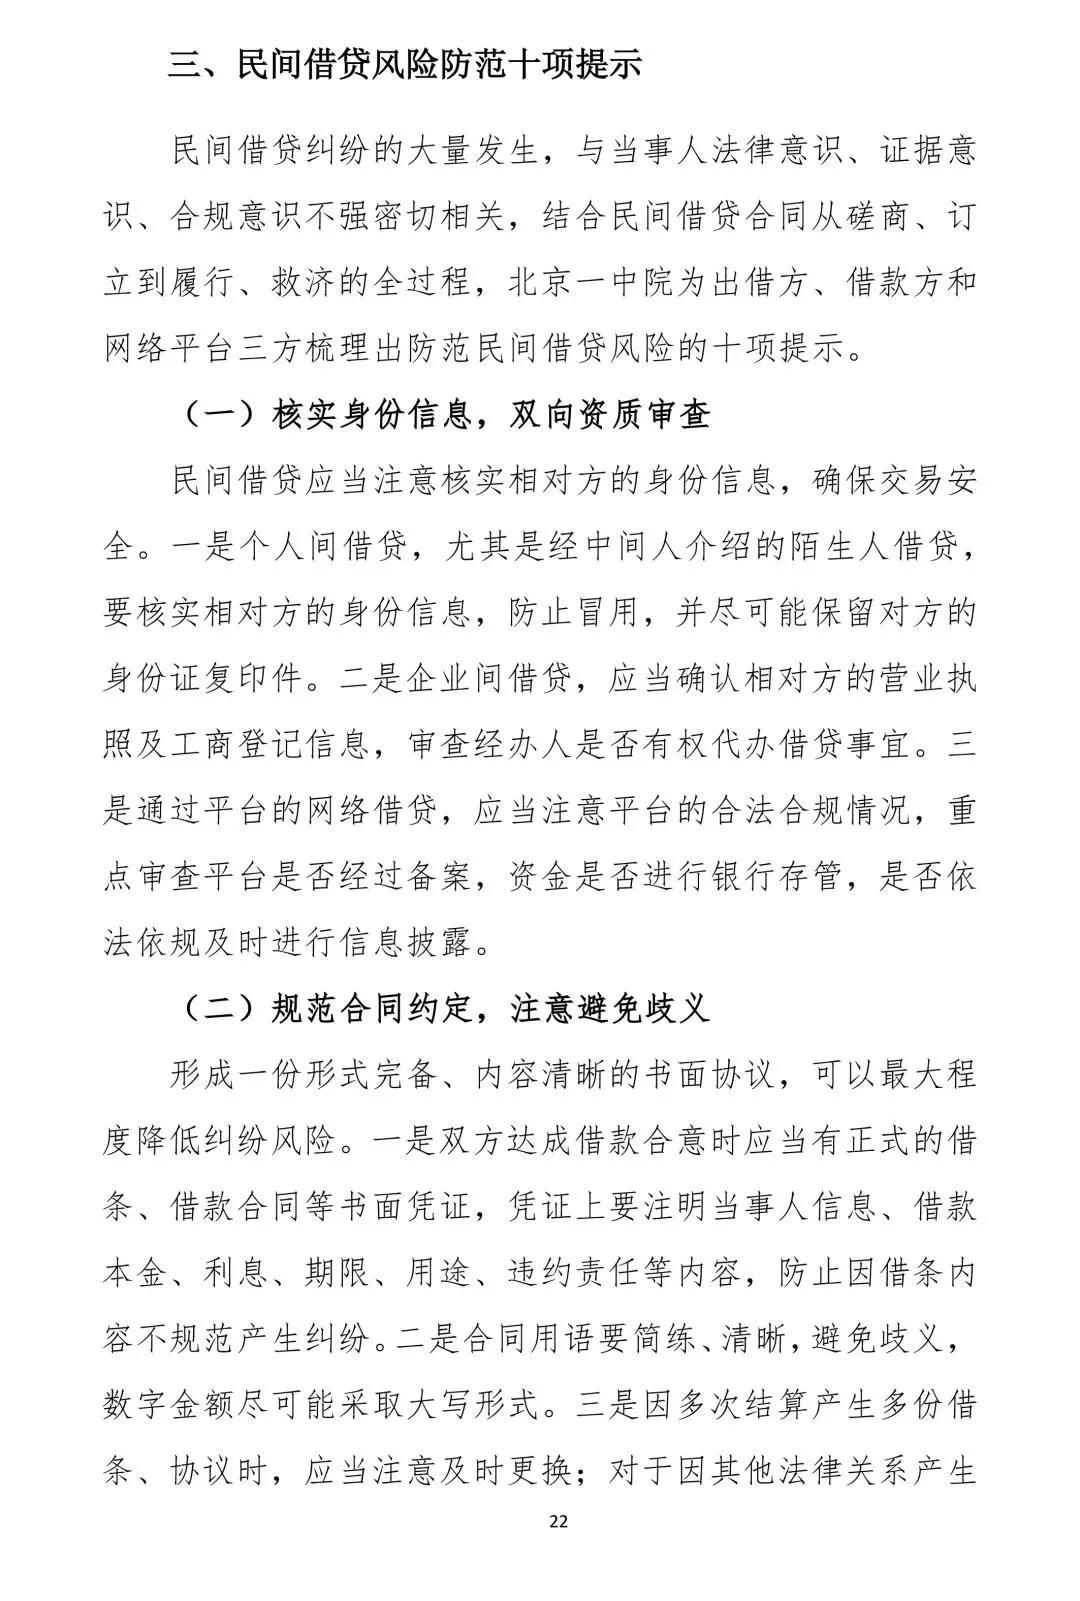 上海一中院发布证券期货犯罪审判白皮书